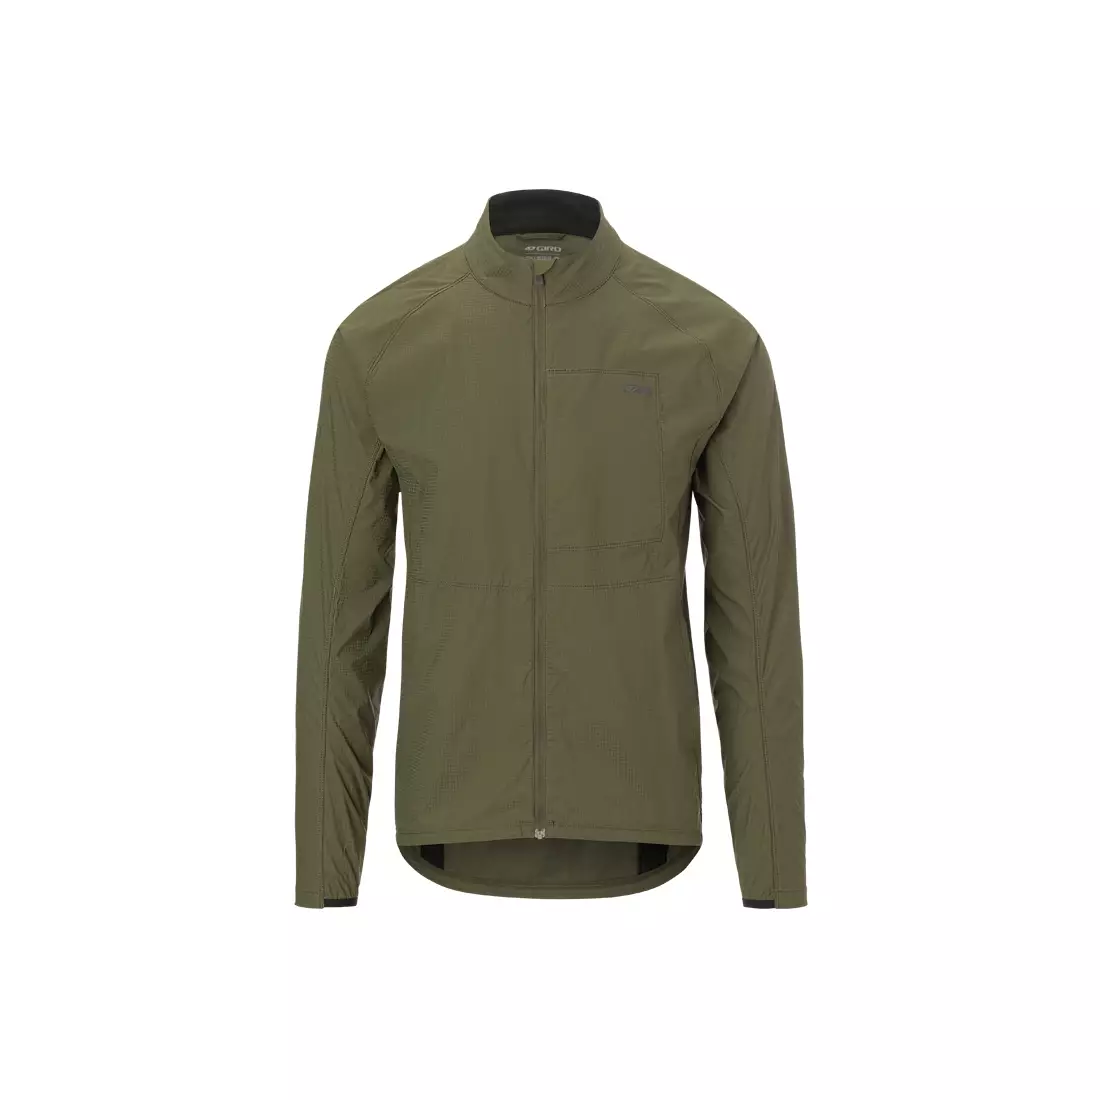 GIRO men's windbreaker jacket stow olive GR-7106769